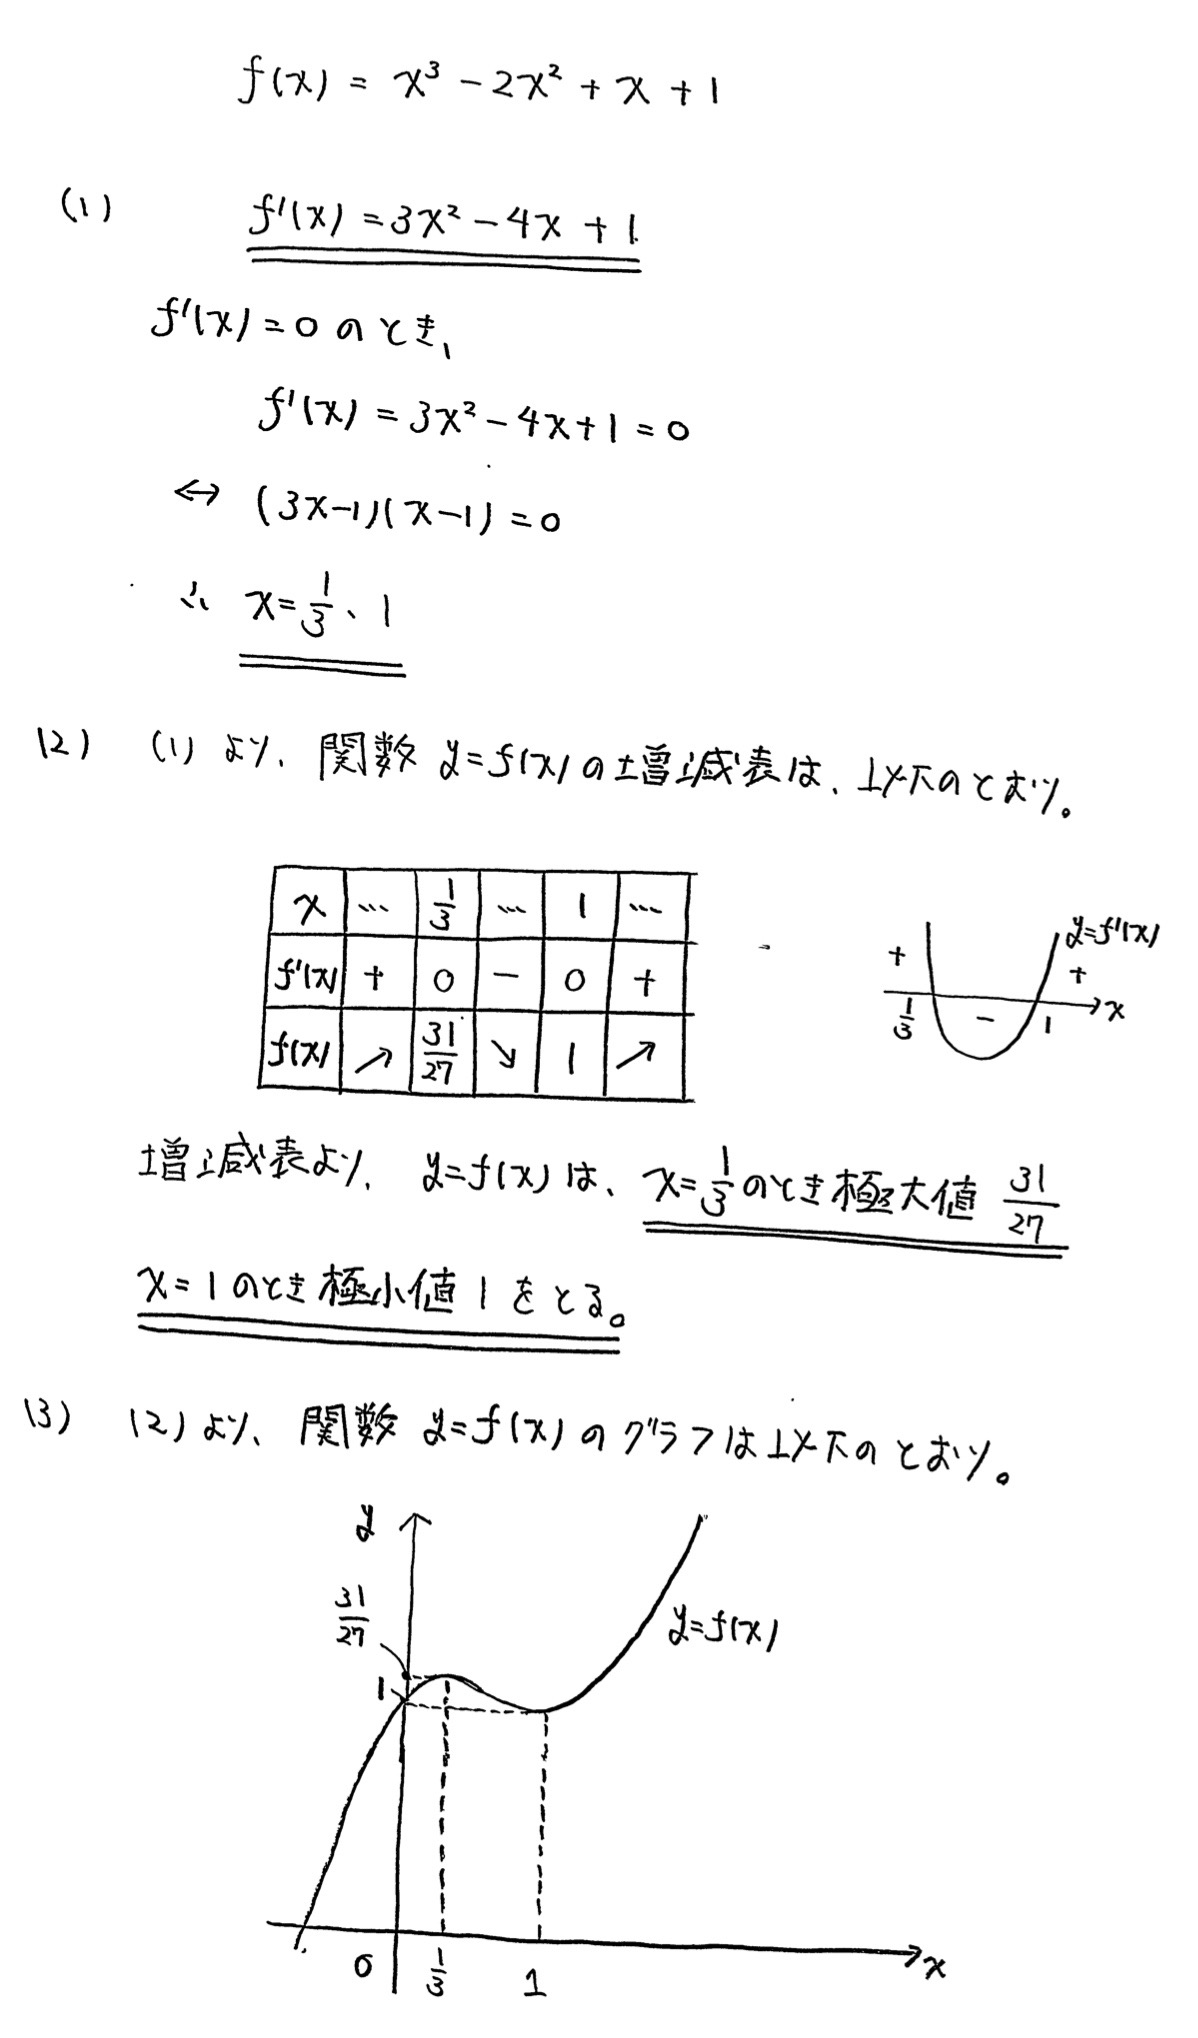 高崎経済大学入試文系数学2022年(令和4年)過去問題(解答・解説)